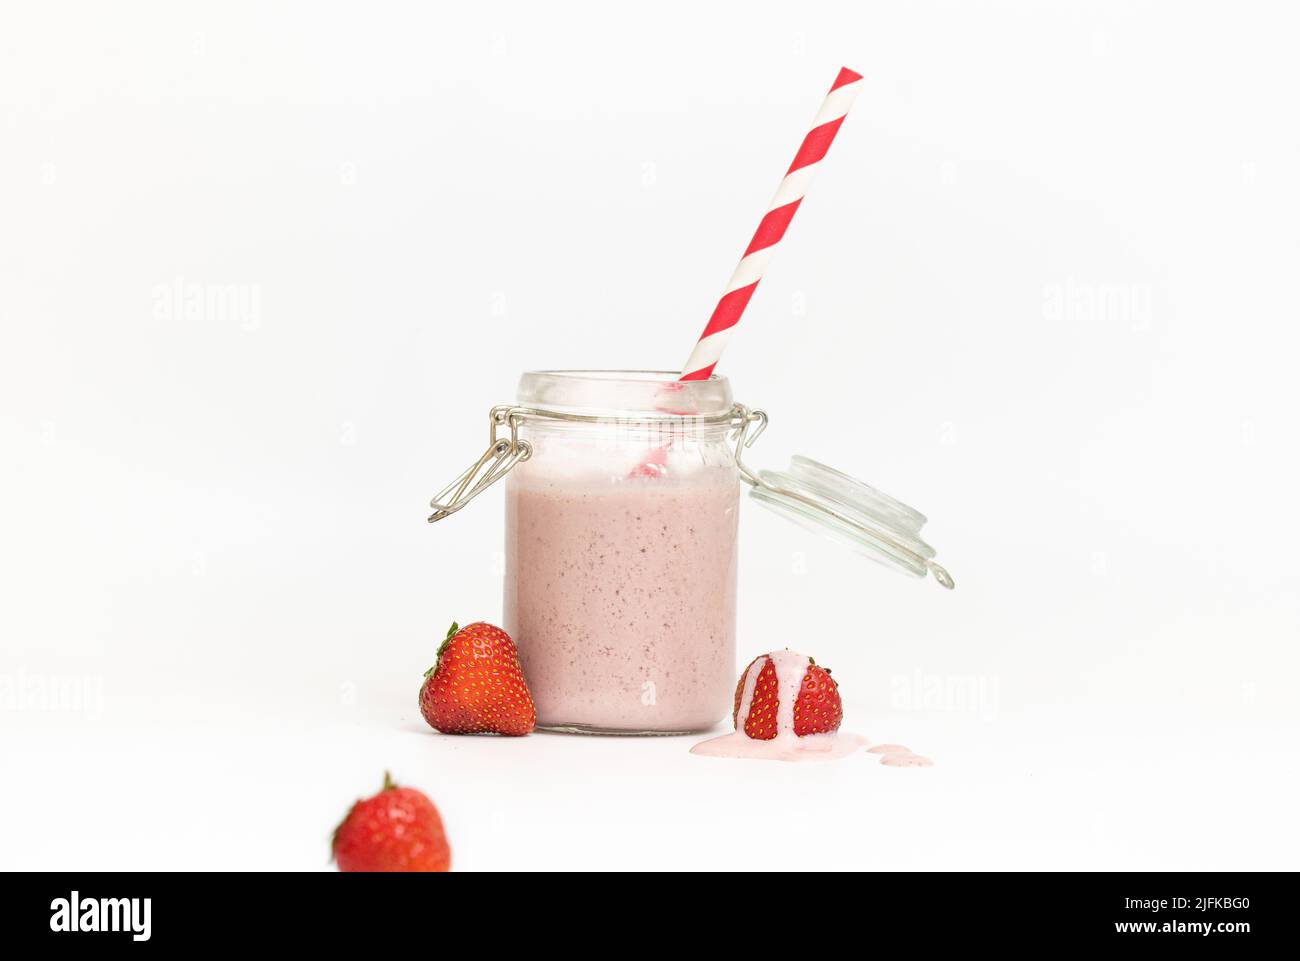 Foto studio di un frullato o fragola con paglia rossa su sfondo bianco Foto Stock